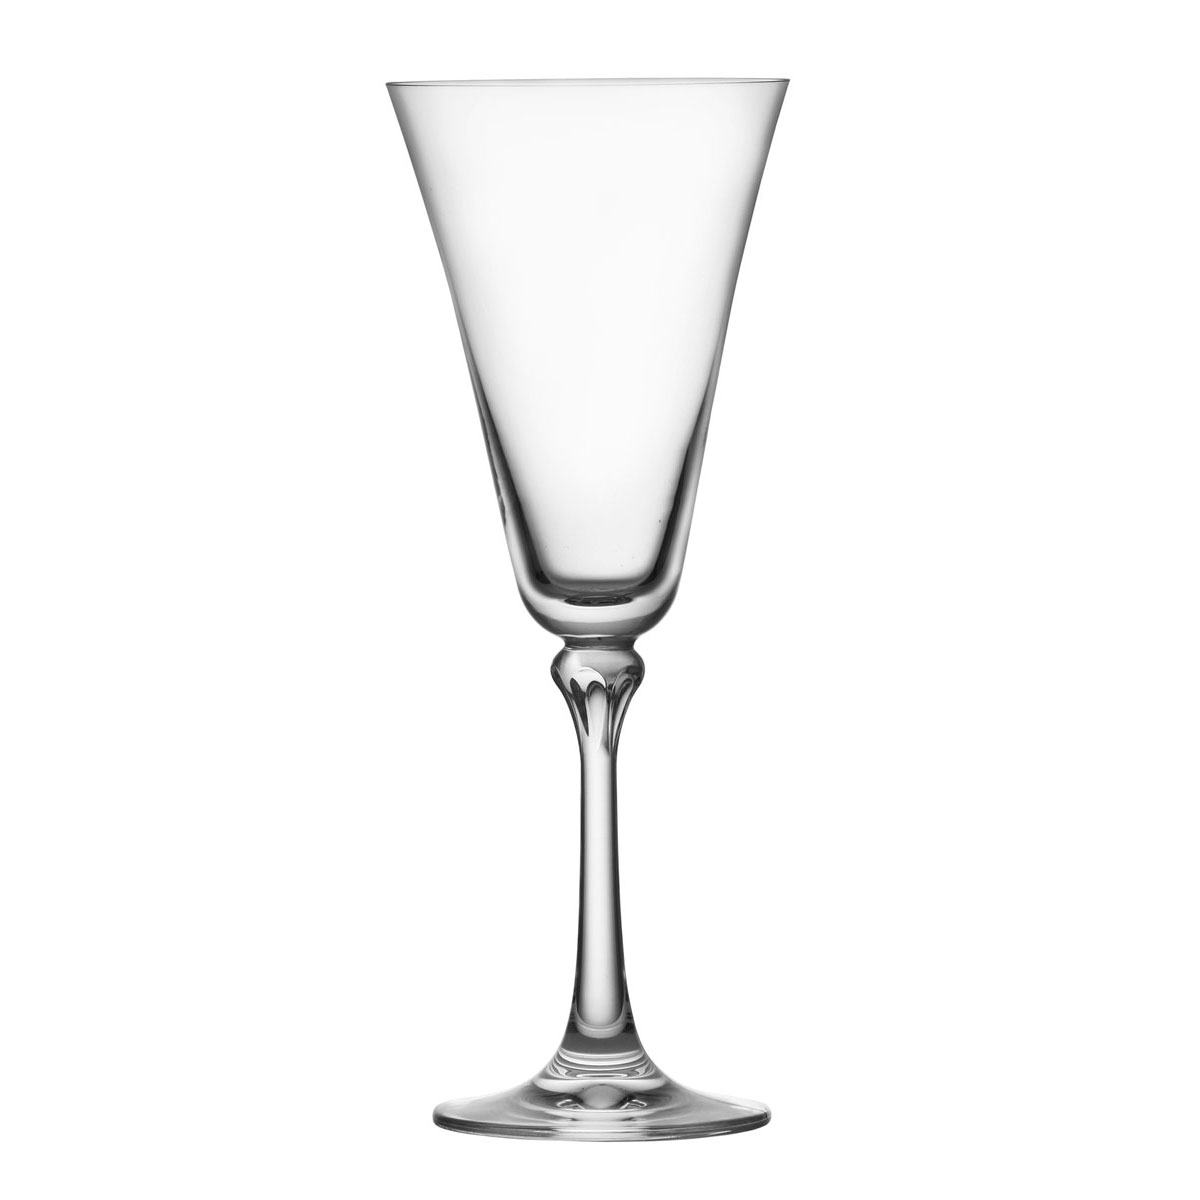 Schott Zwiesel Tritan Crystal, Charlotte Crystal White Wine Glass, Single